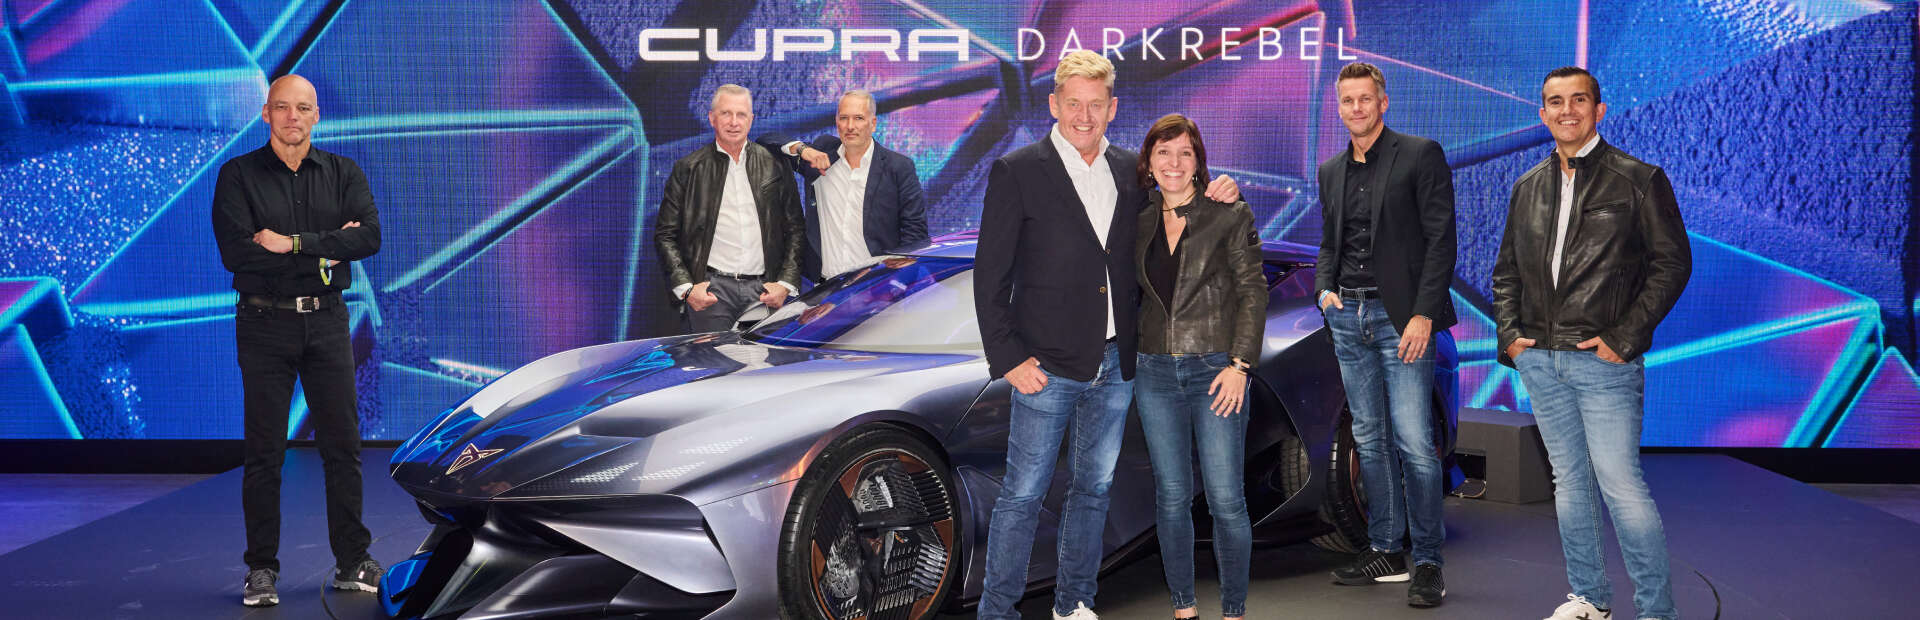 CUPRA ogłasza rekordowe wyniki sprzedaży w swojej historii oraz potwierdza wejście na rynek północnoamerykański